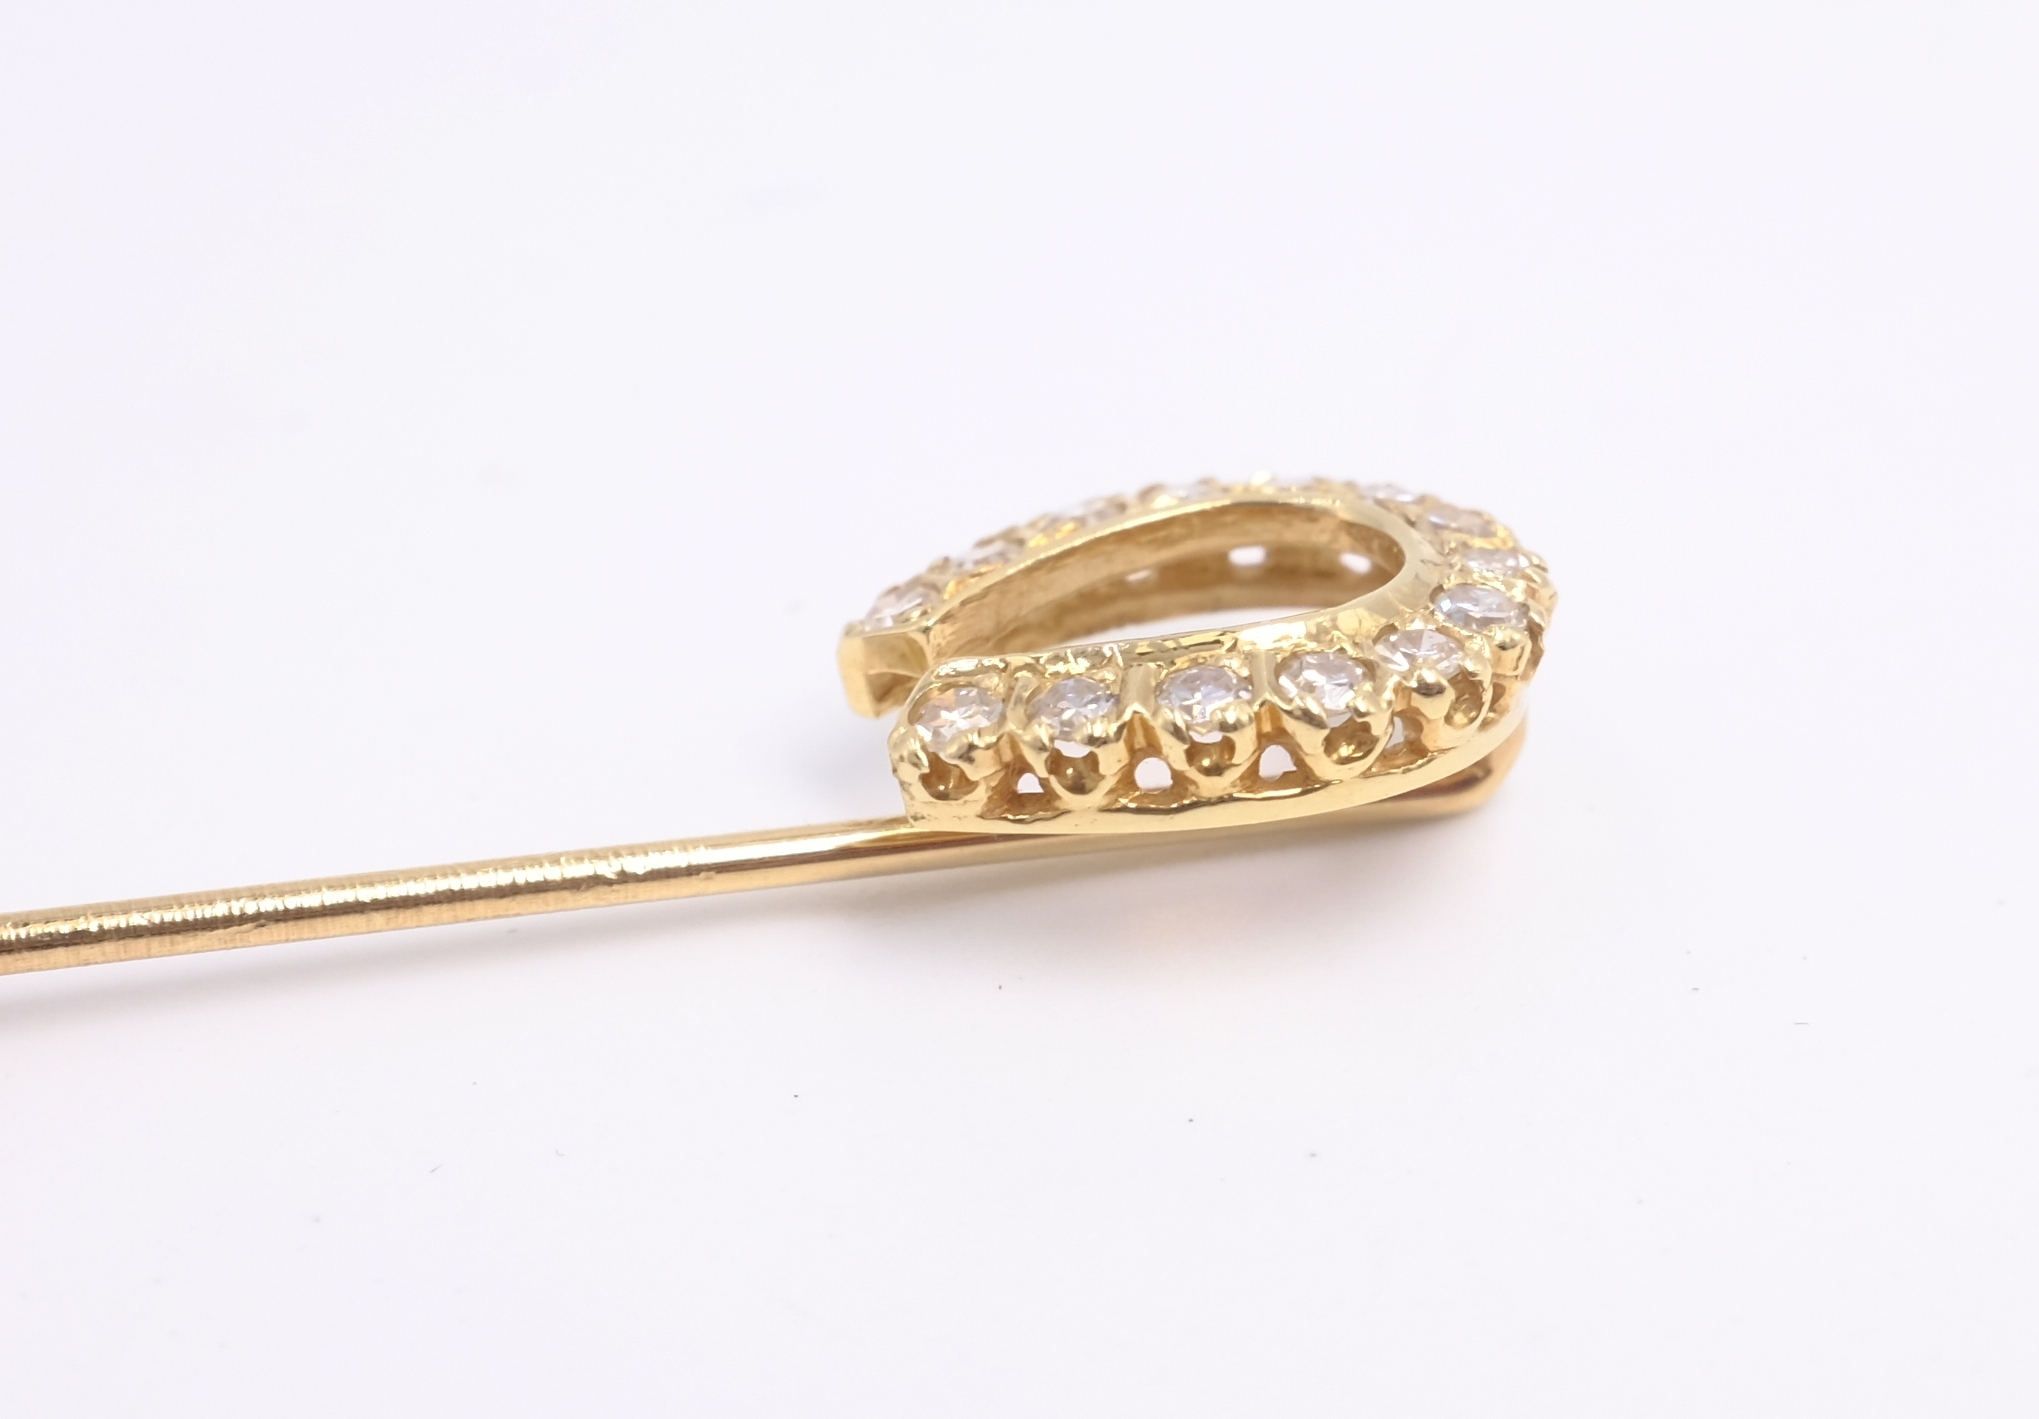 Diamond set gold horse shoe pin, stamped 14K - Image 2 of 3